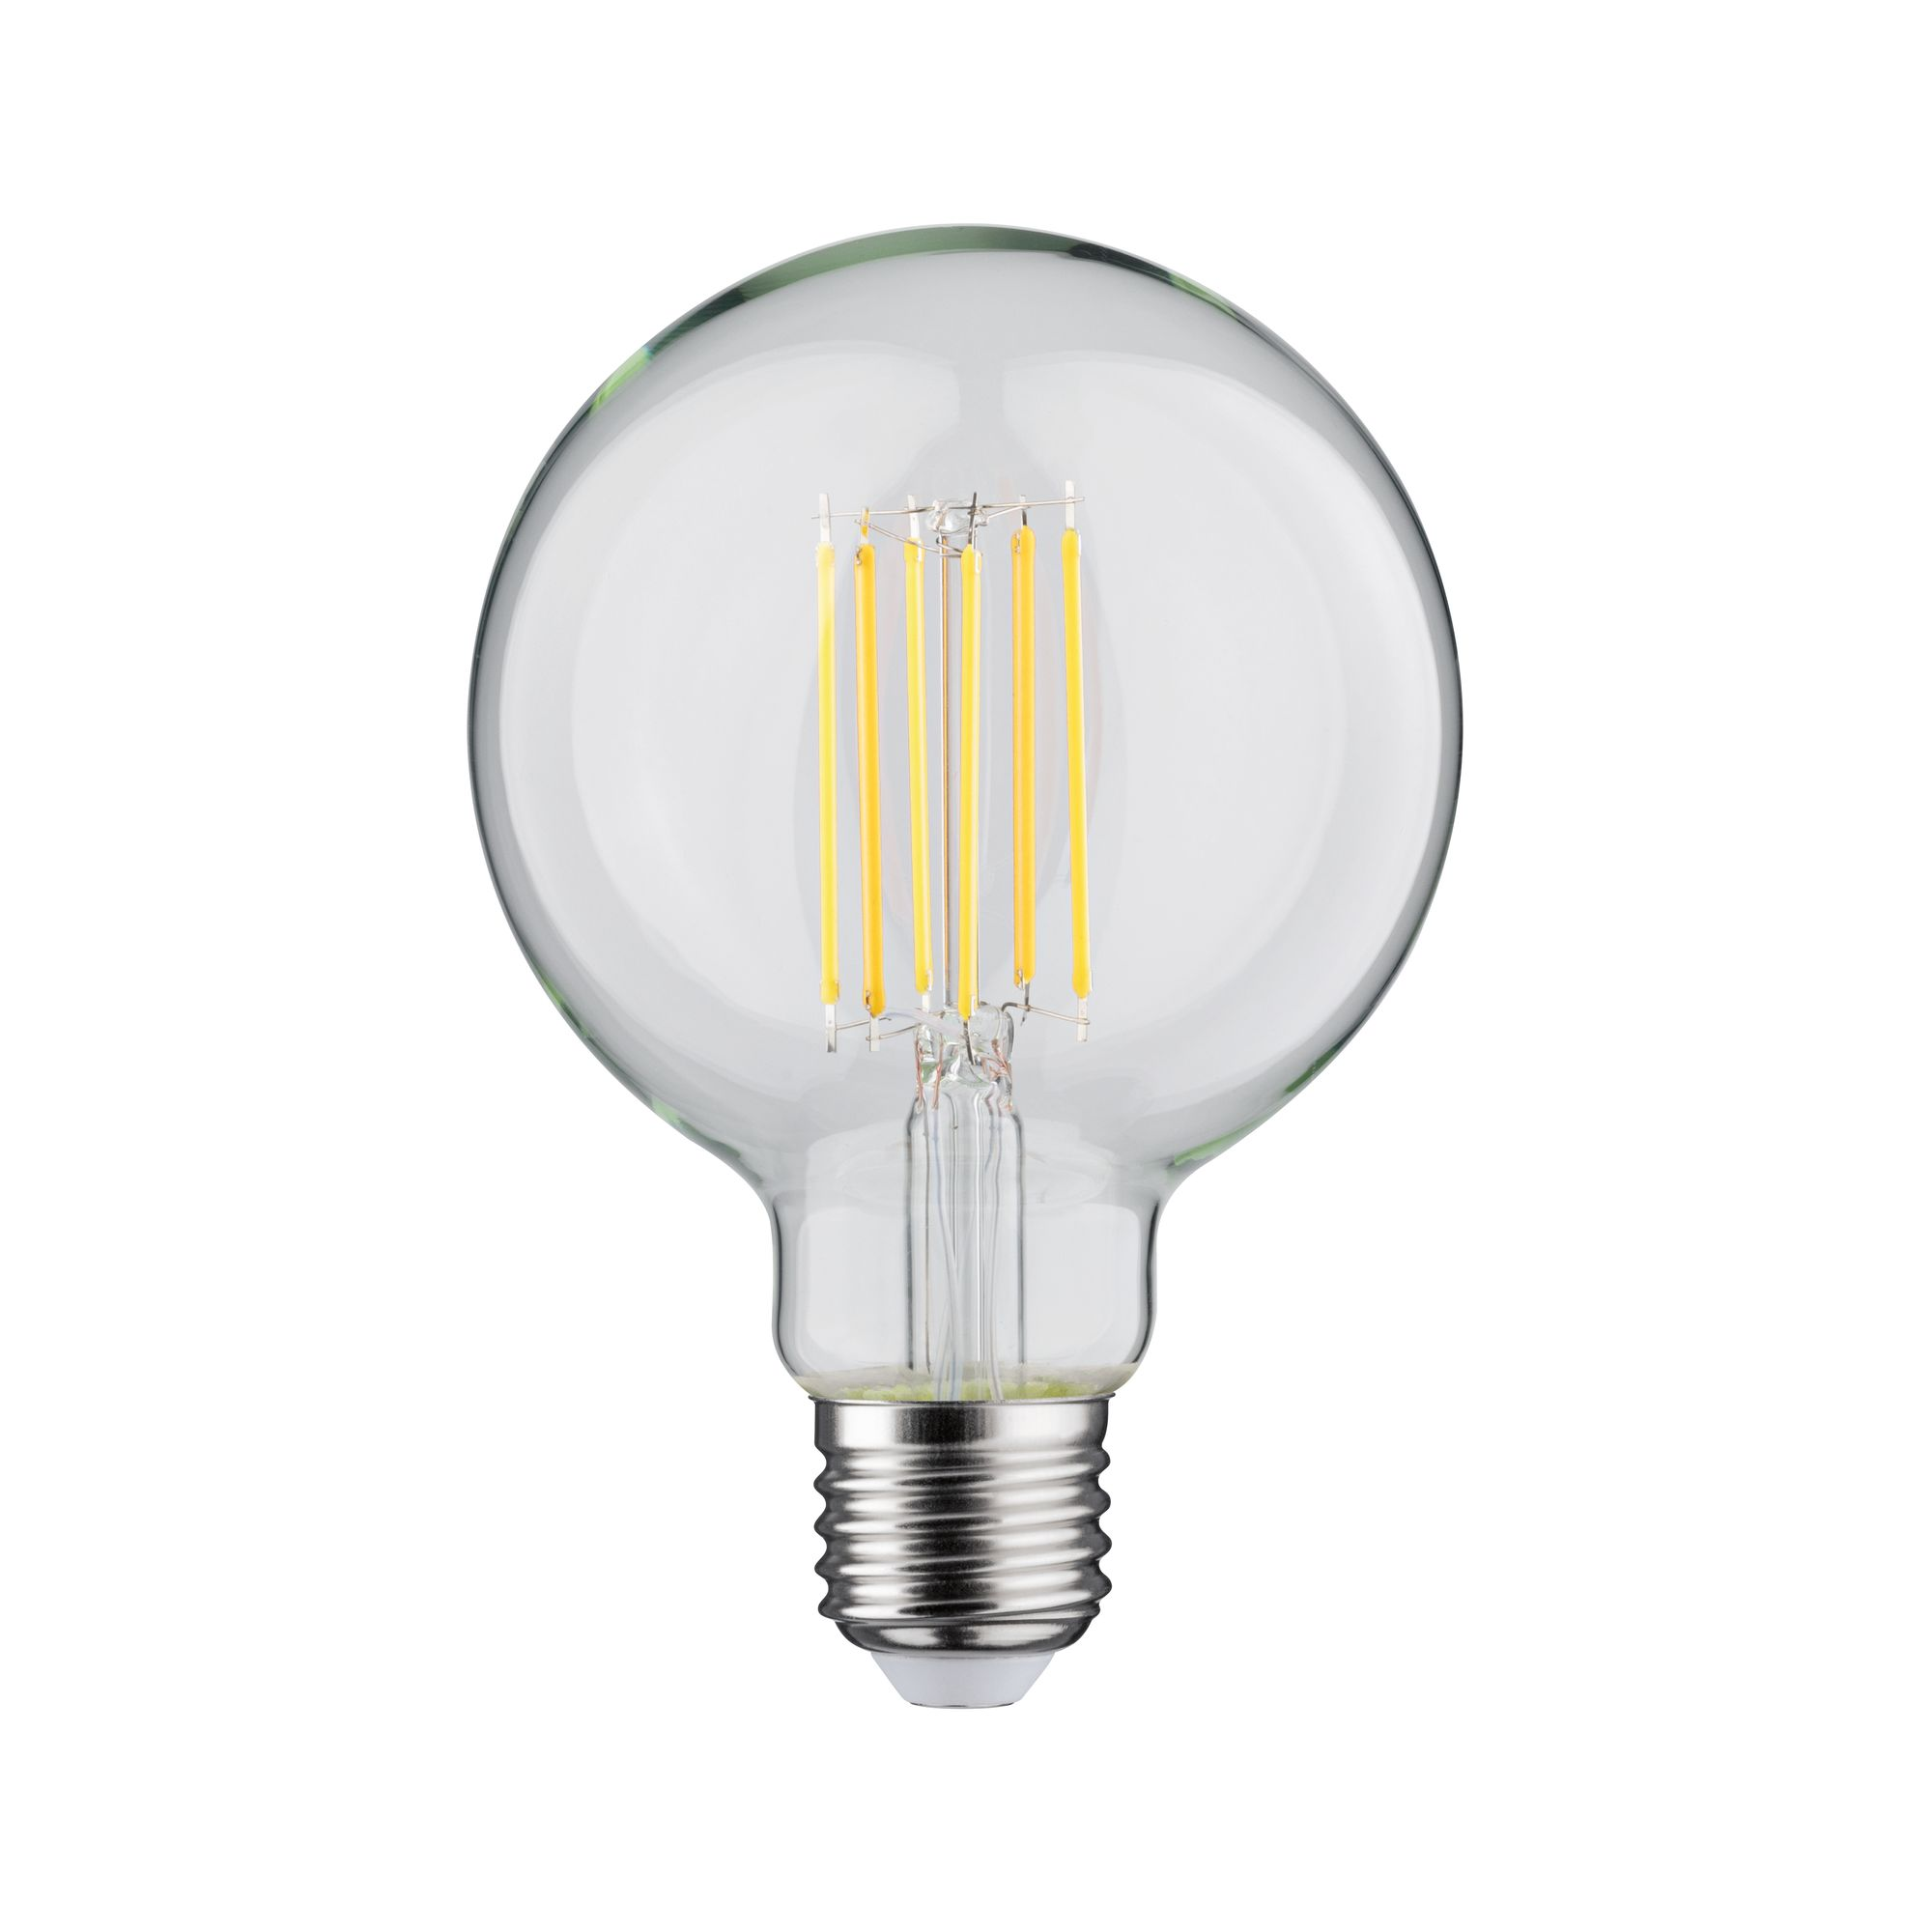 LED-Globelampe E27 7W (60W) 806 lm goldlicht/warmweiß klar + product picture